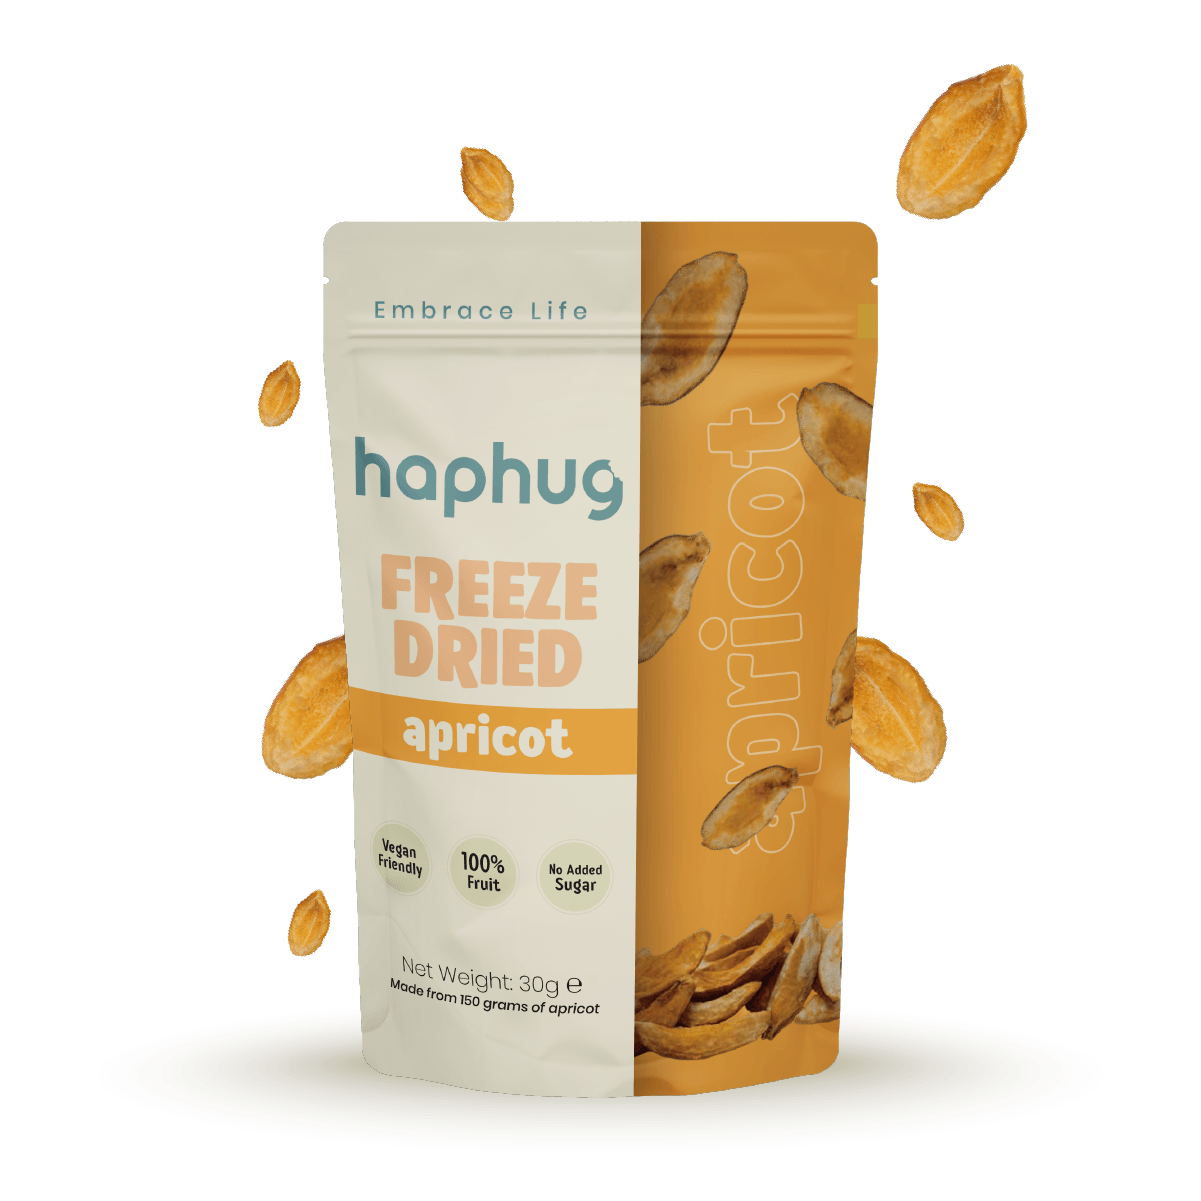 HapHug Freeze-Dried Apricot - 30g